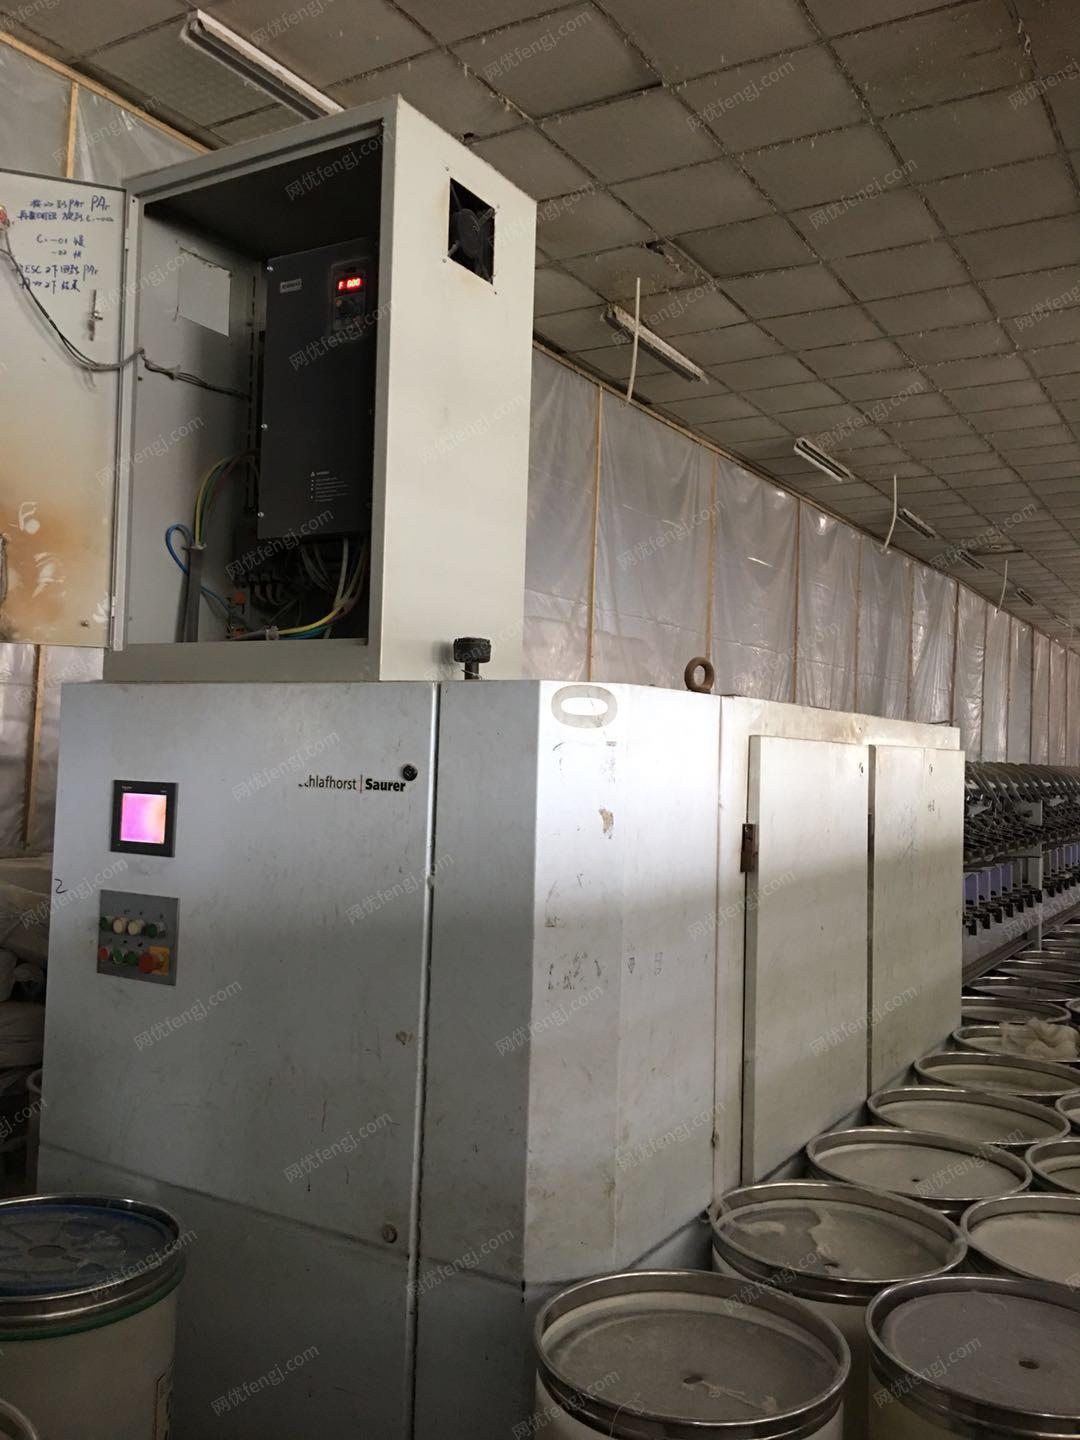 纺织厂处理苏拉240锭气流纺纱机1台　有图片